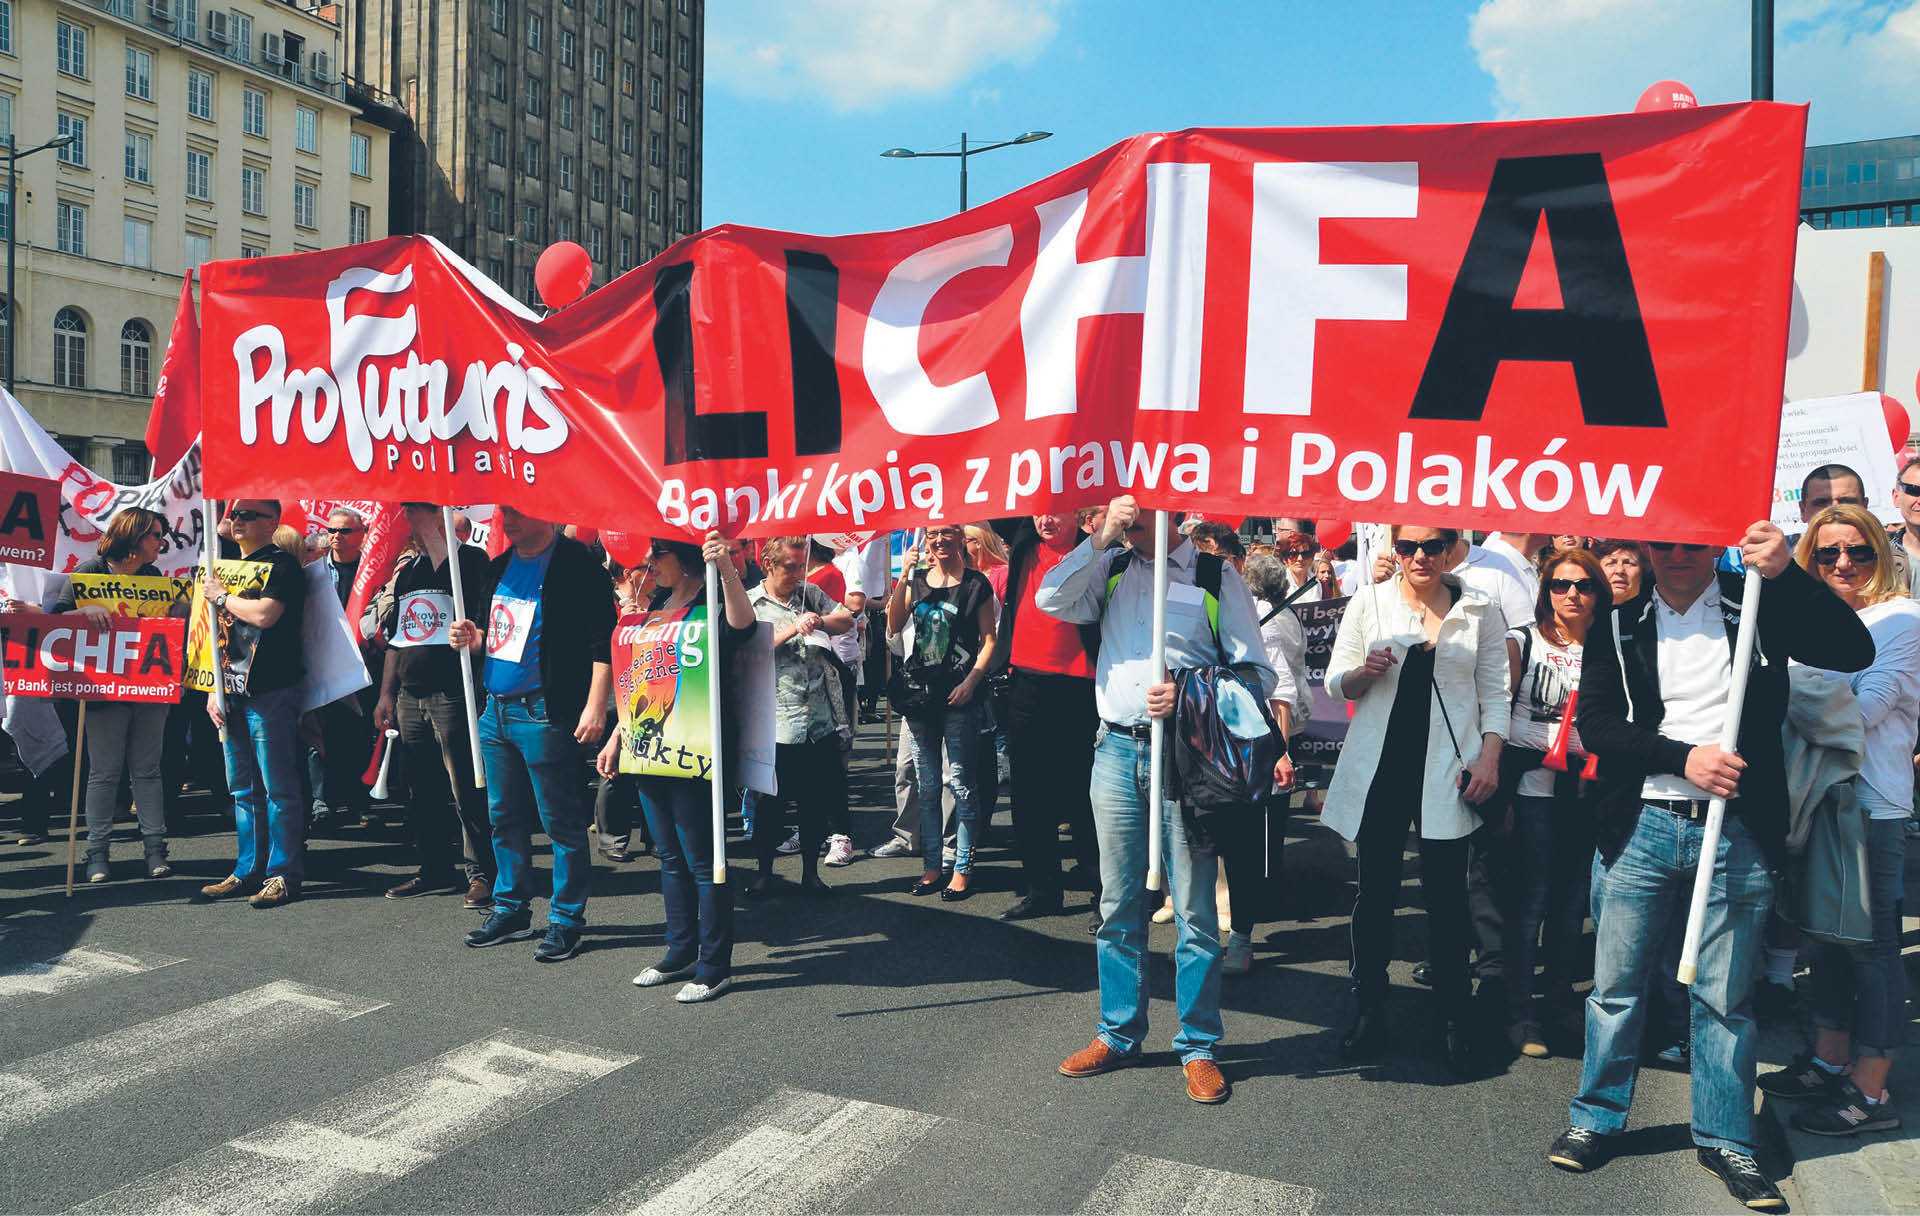 Demonstracja posiadaczy kredytów frankowych.Warszawa, kwiecień 2015 r.